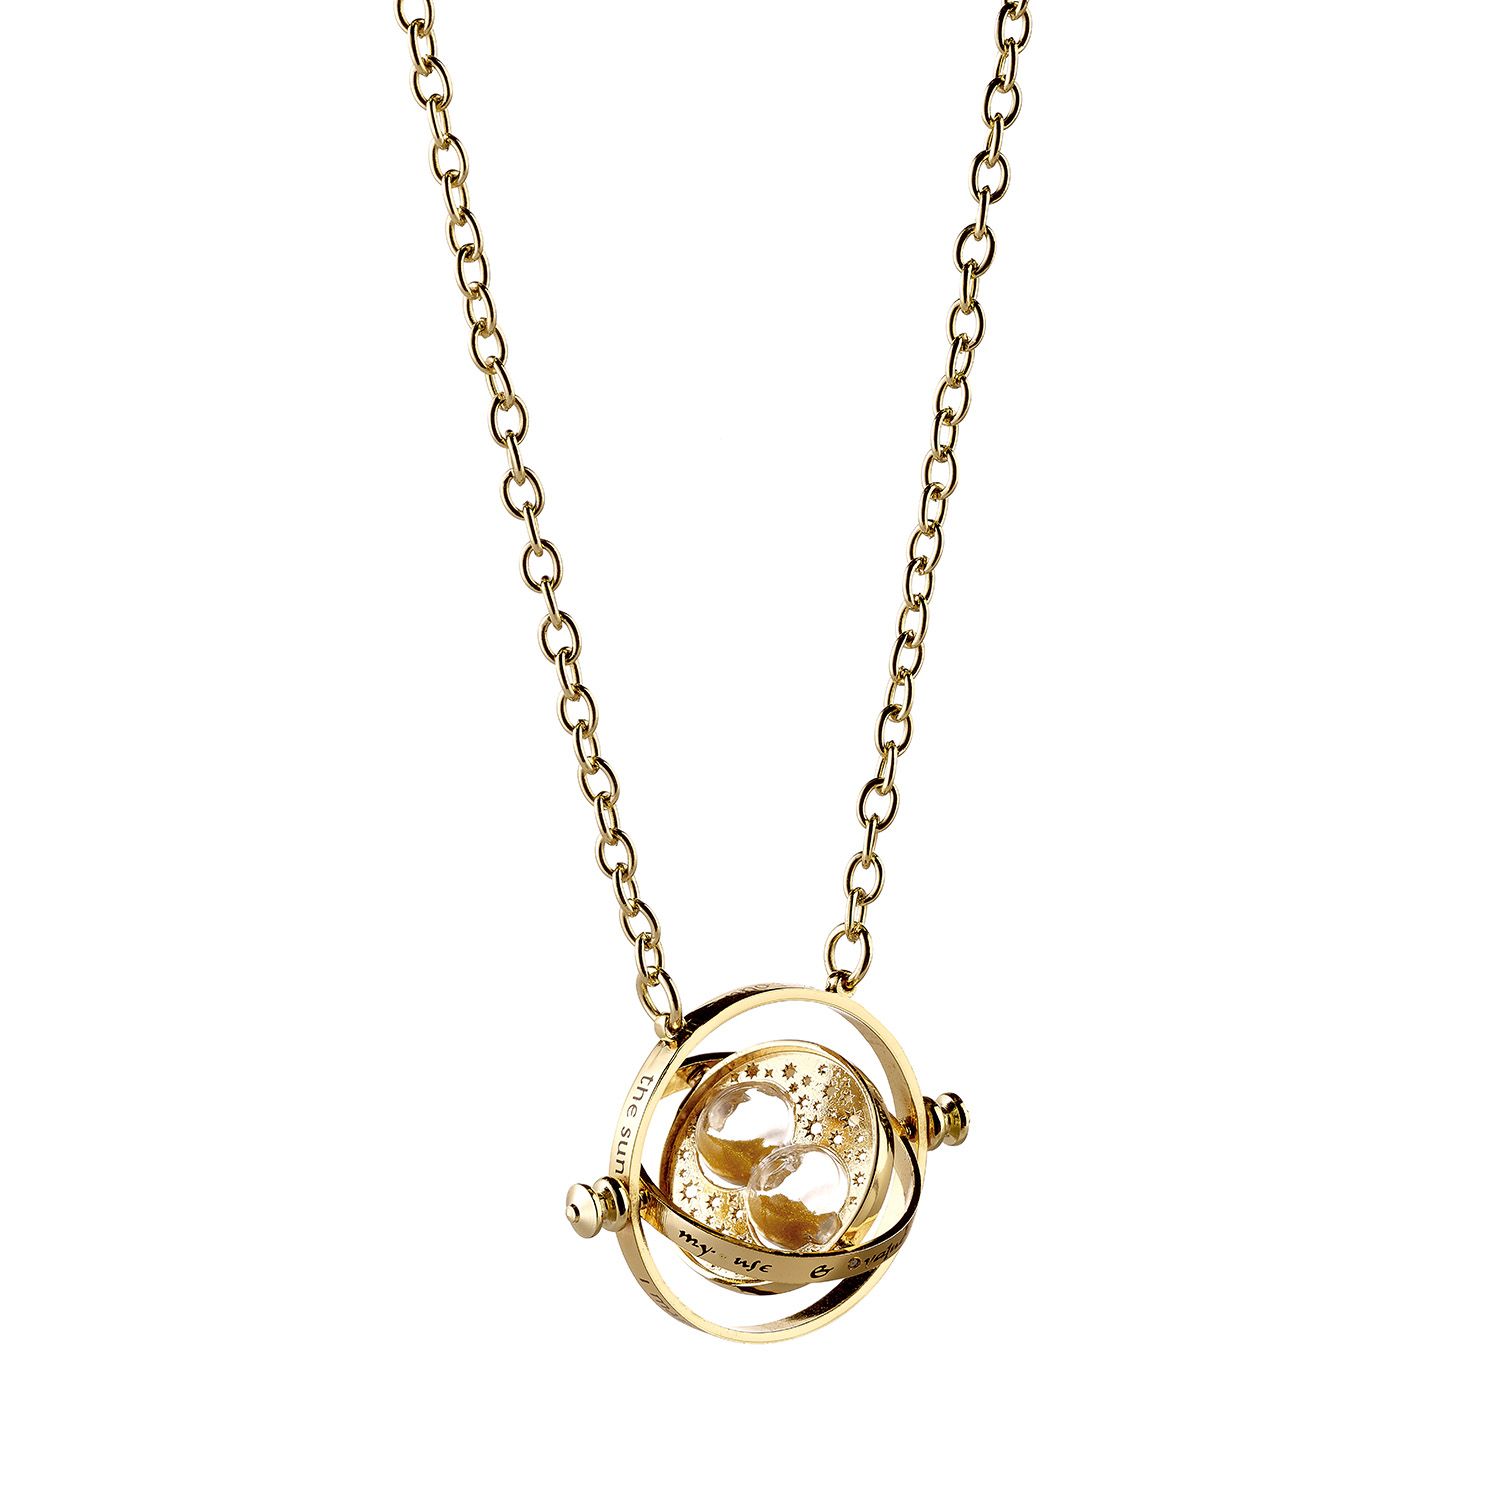 The Carat Shop Harry Potter Time Turner Necklace - Gold for sale online |  eBay